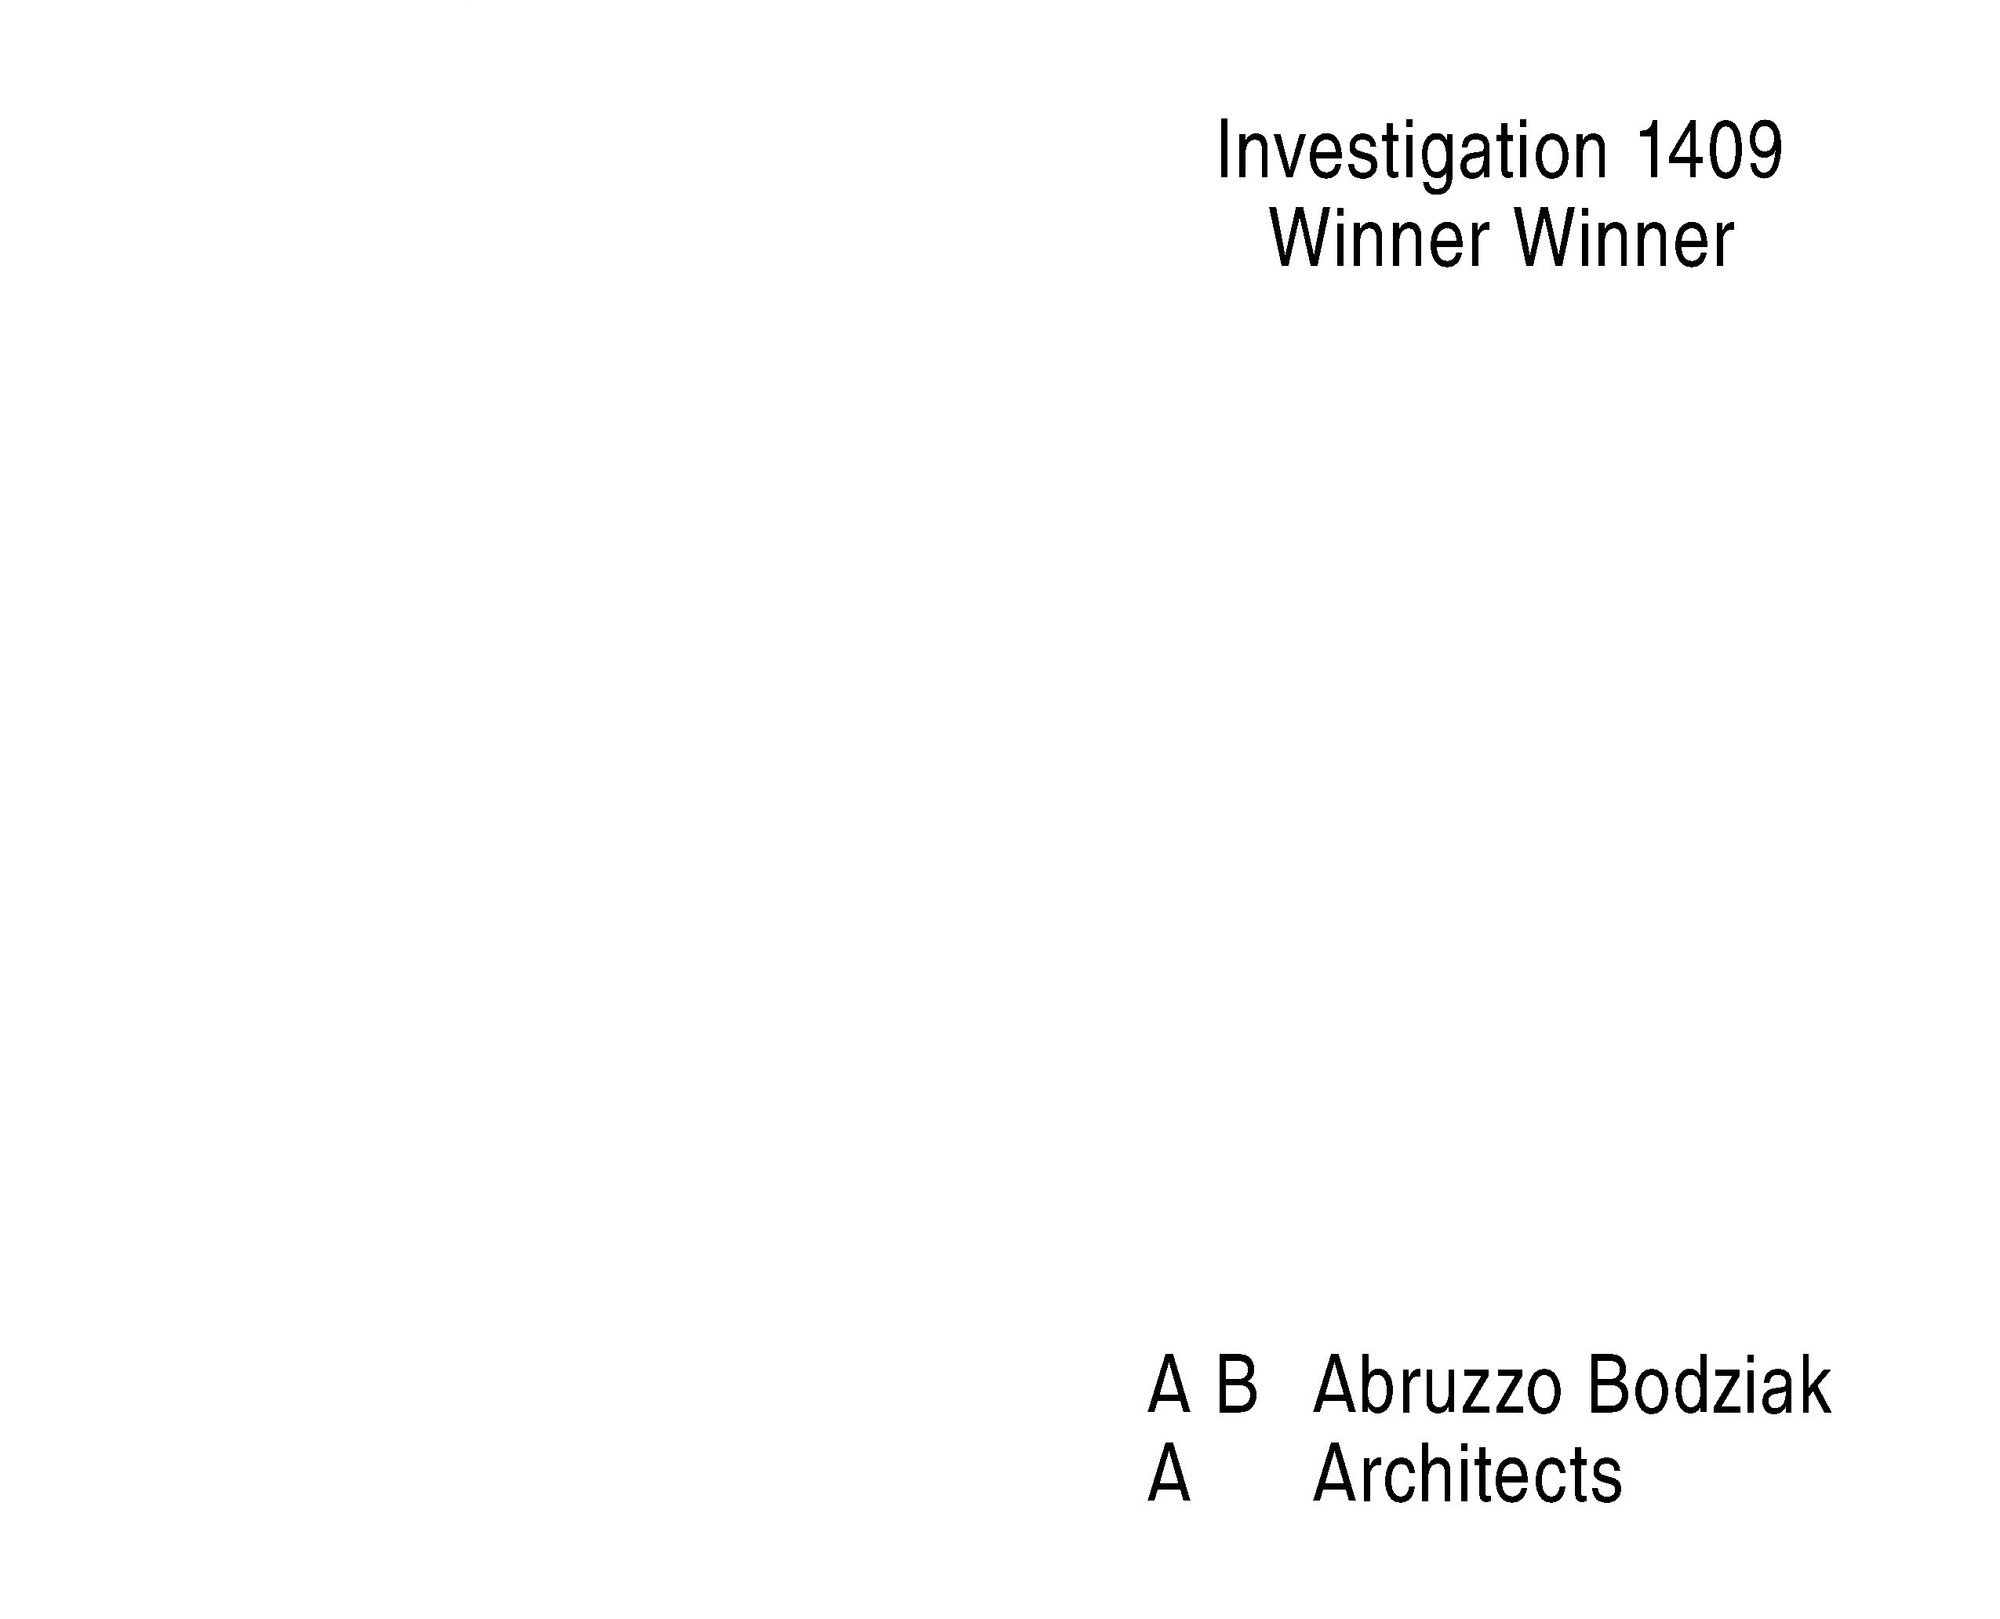 1409 winner winner investigation page 02 2000 xxx q85